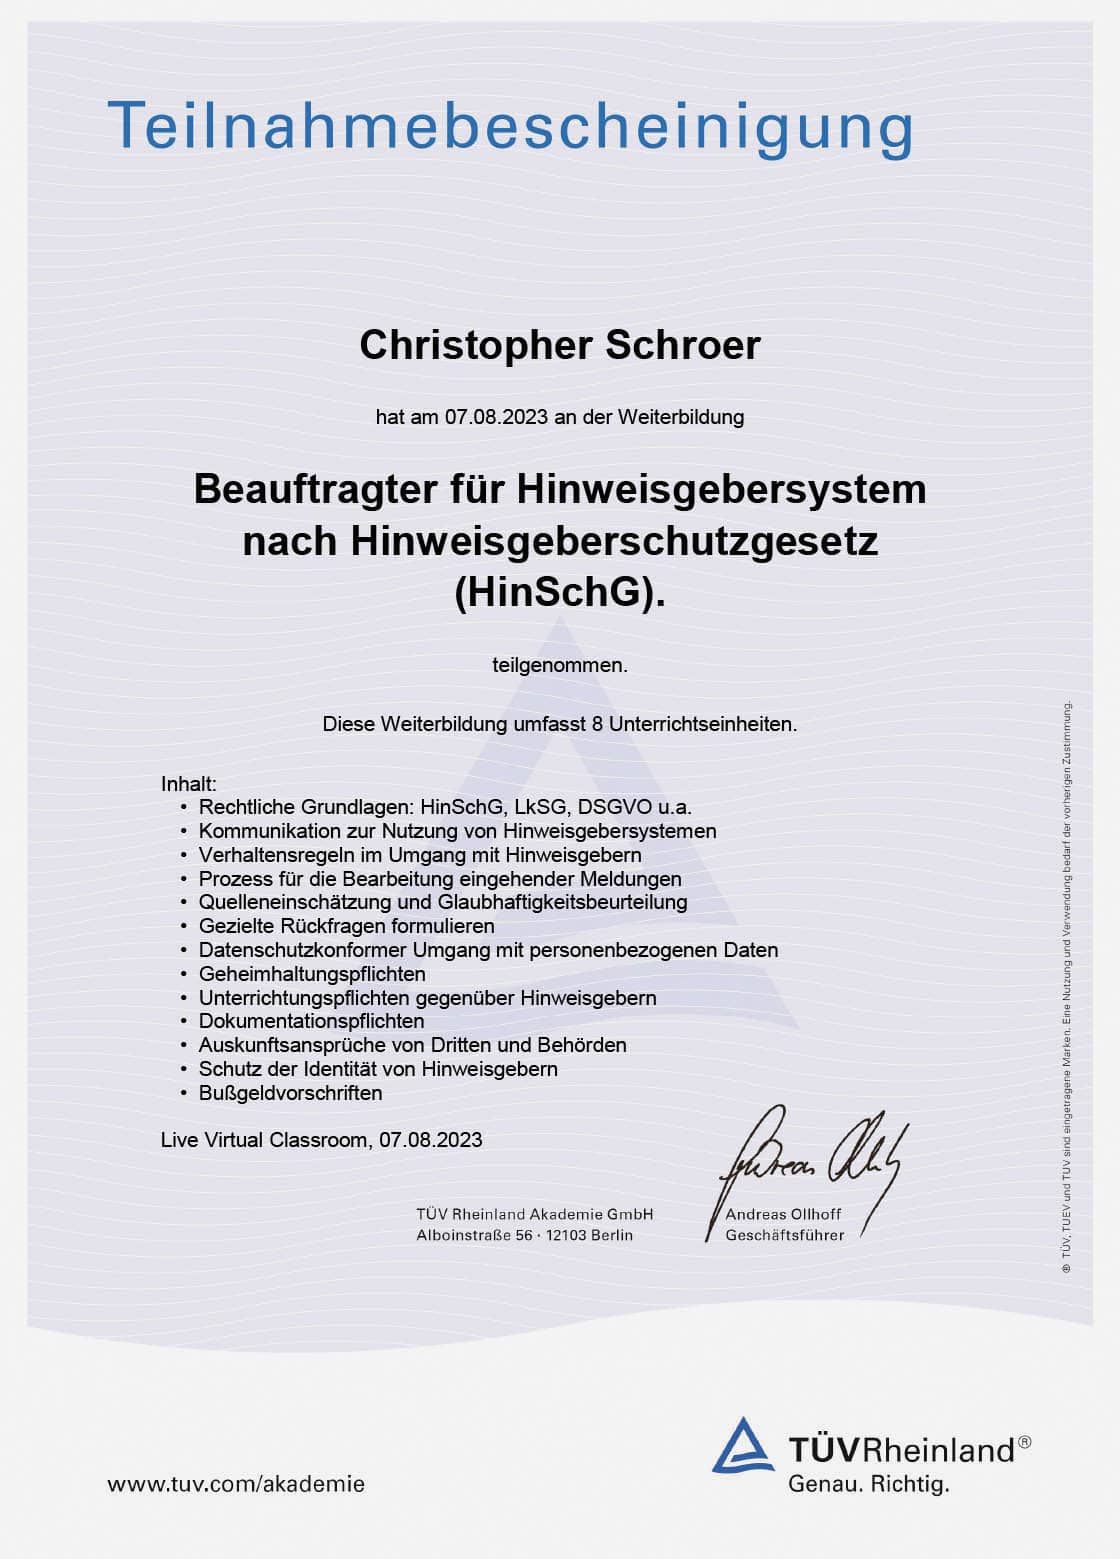 Christopher Schroer, Berauftrager für Hinweisgeberschutzsysteme nach Hinweisgeberschutzgesetz (HinSchG)